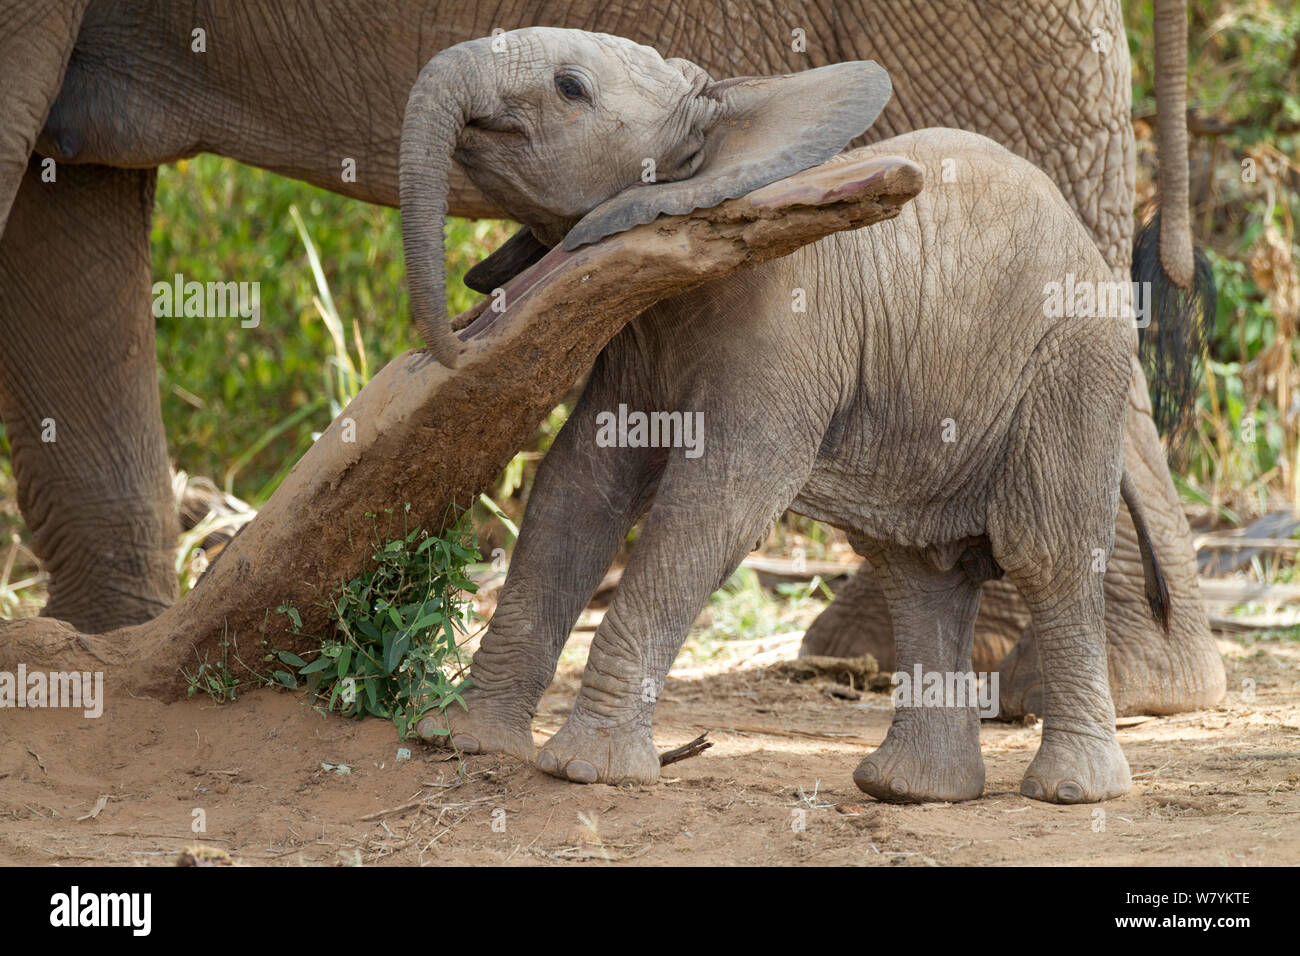 Baby elephant (Loxodonta africana) playing with log in Samburu National Reserve, Kenya. Stock Photo